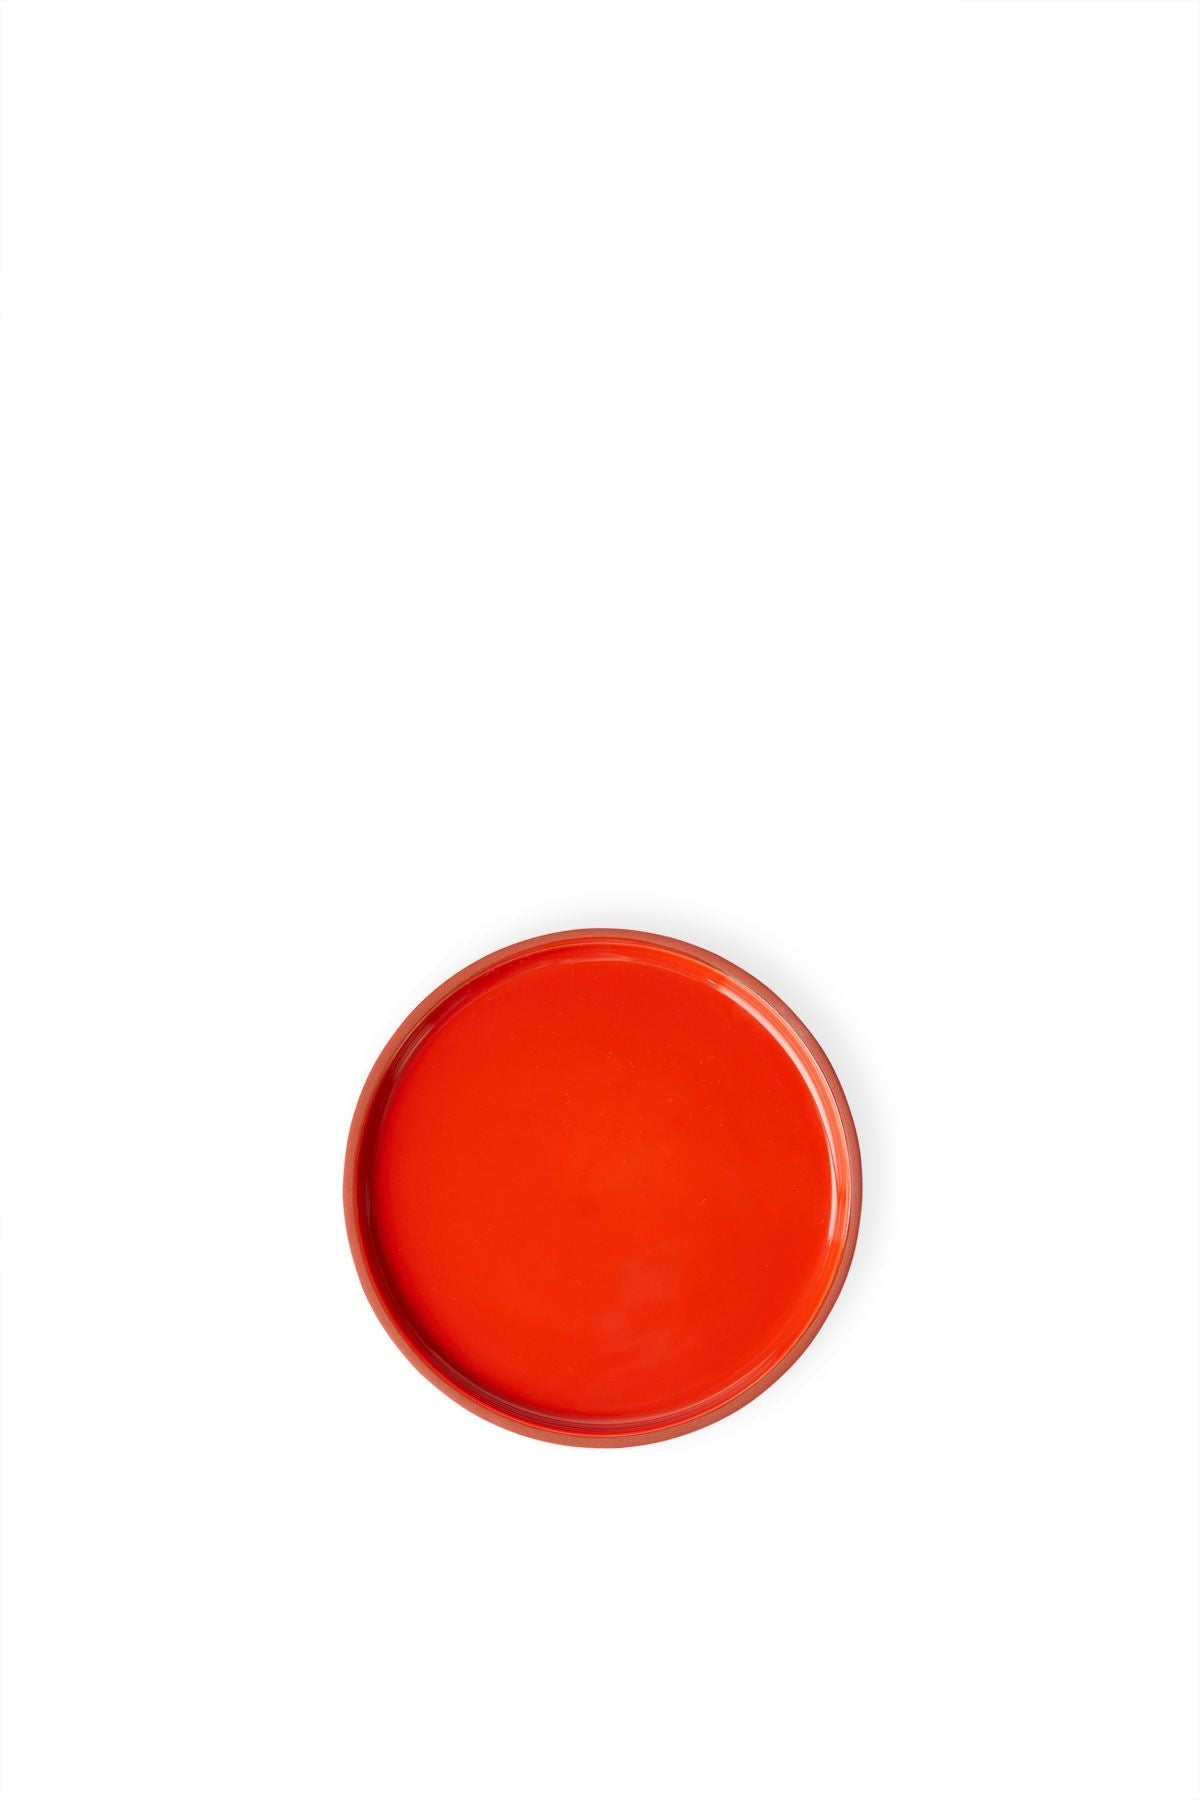 Studio über Clayware -Set von 2 Platten Medium, Terrakotta/Rot